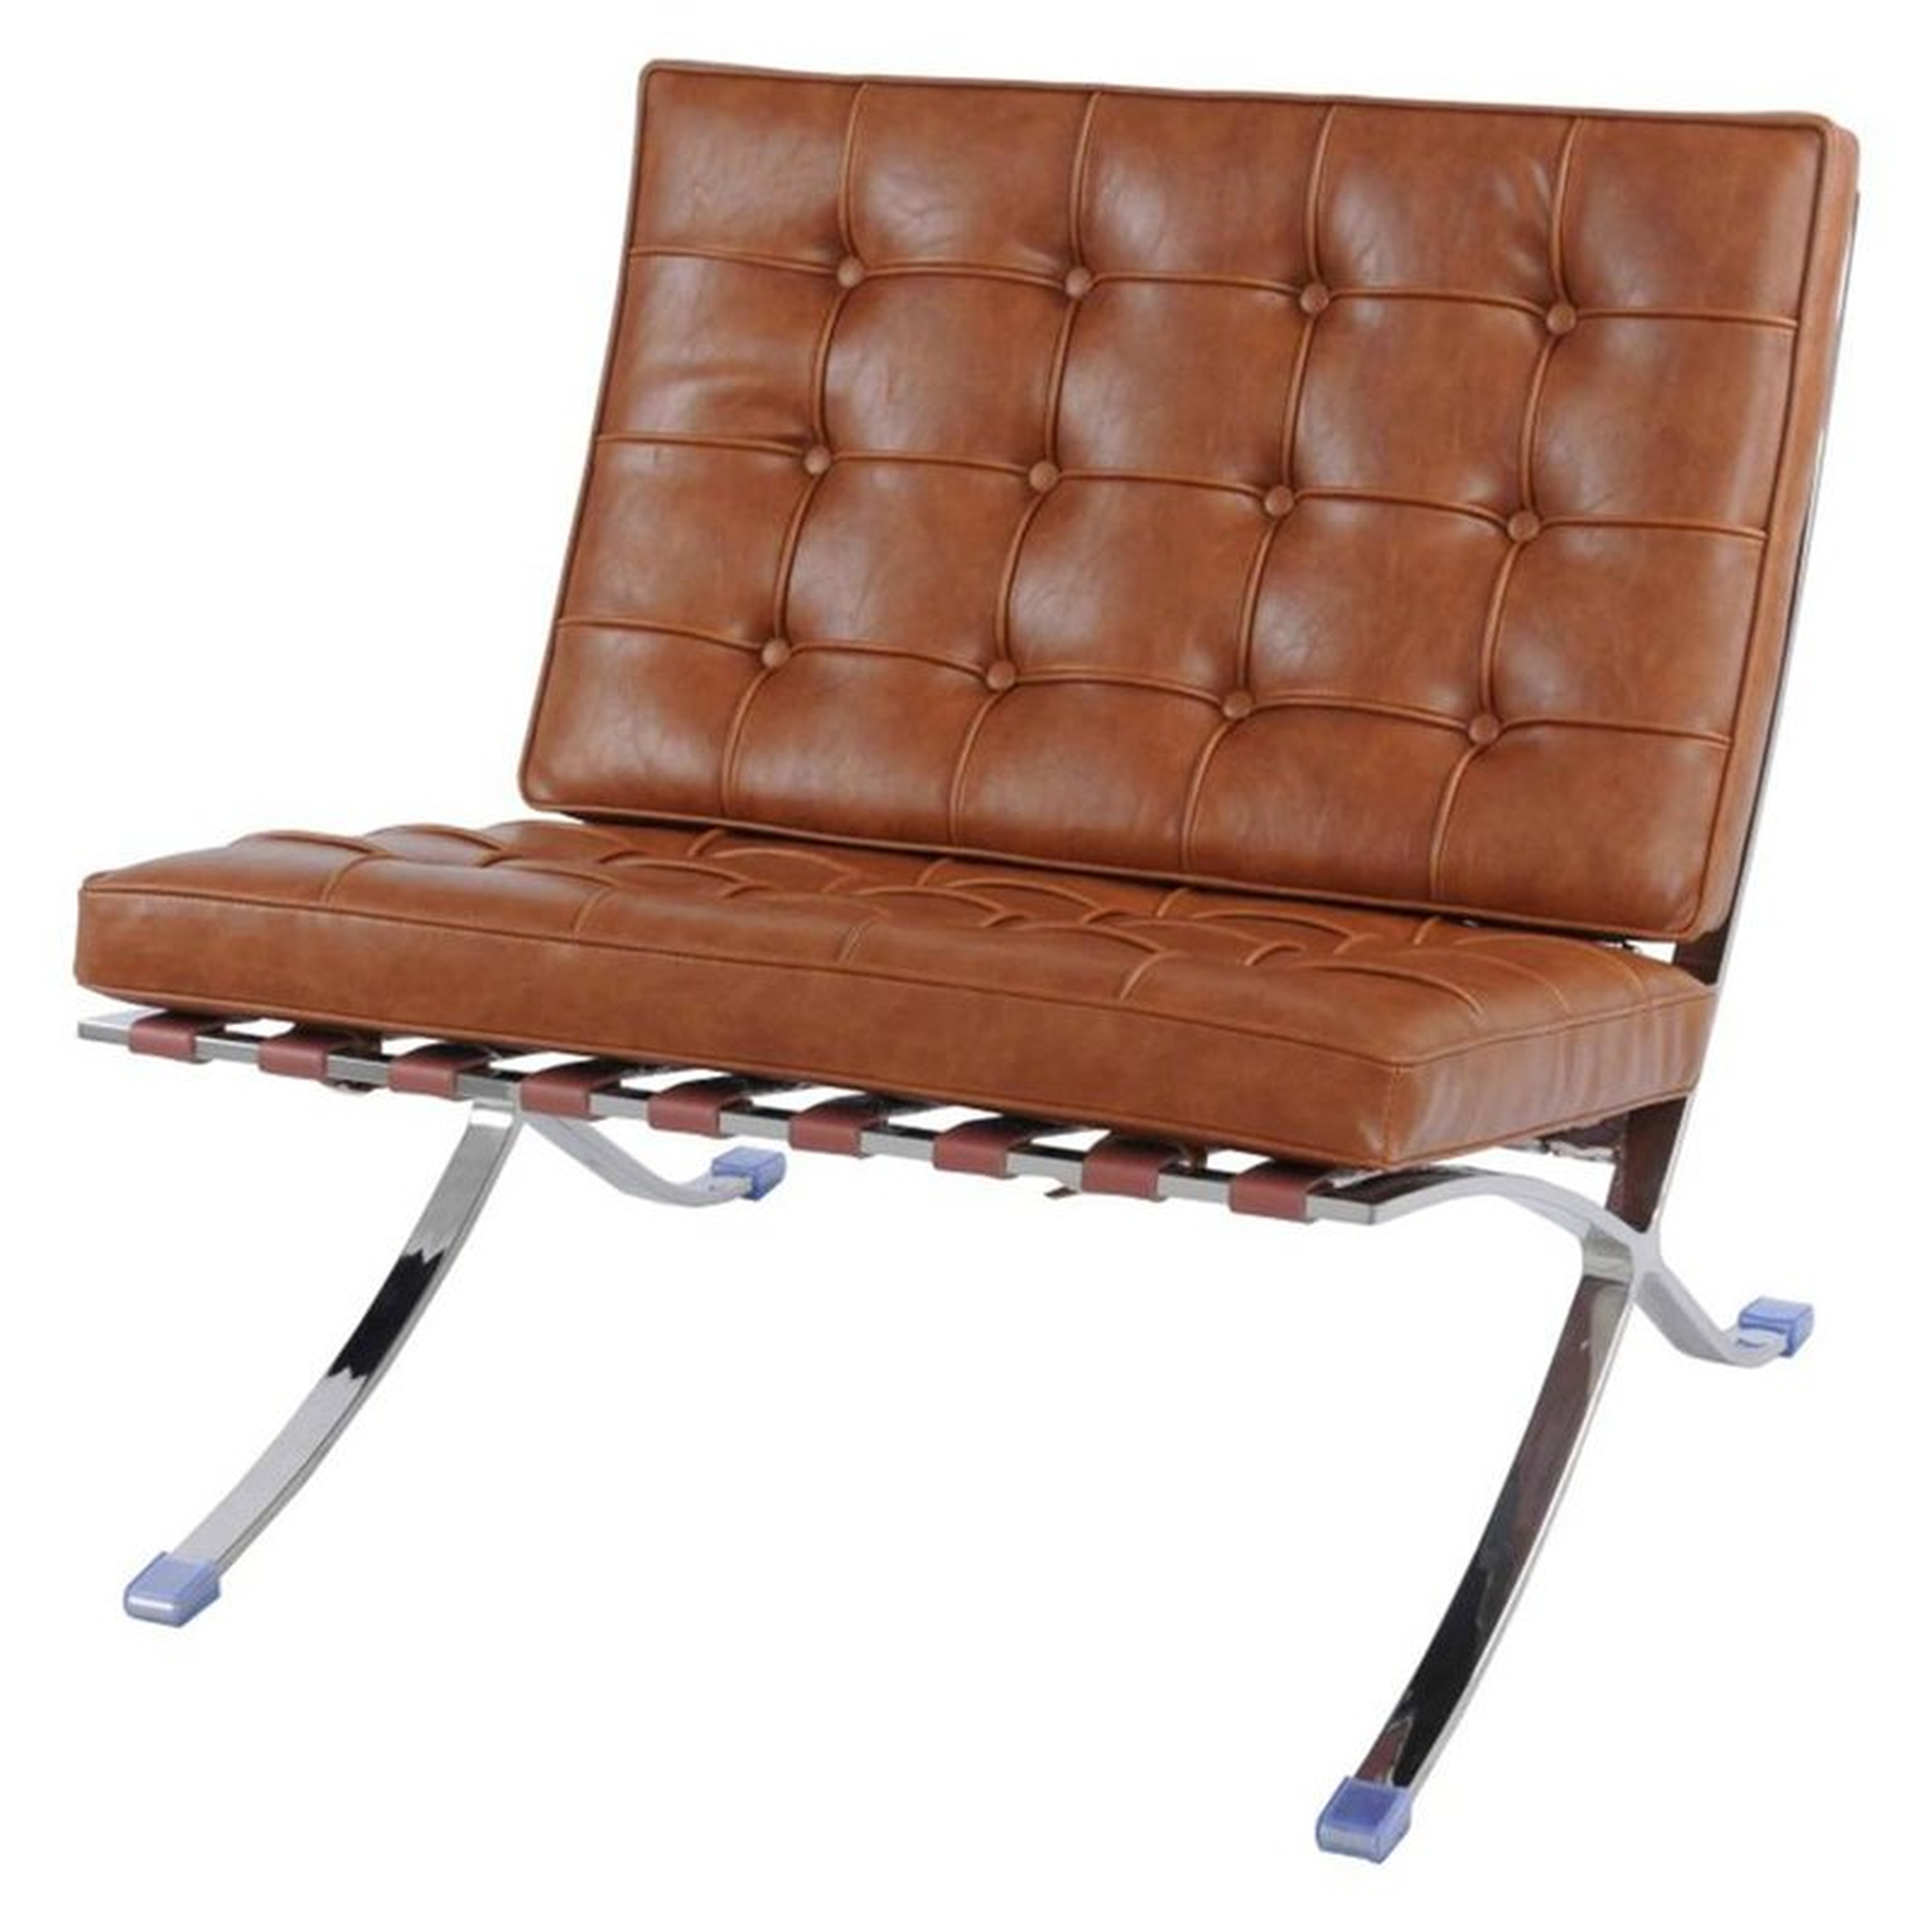 Throggs Lounge Chair - AllModern